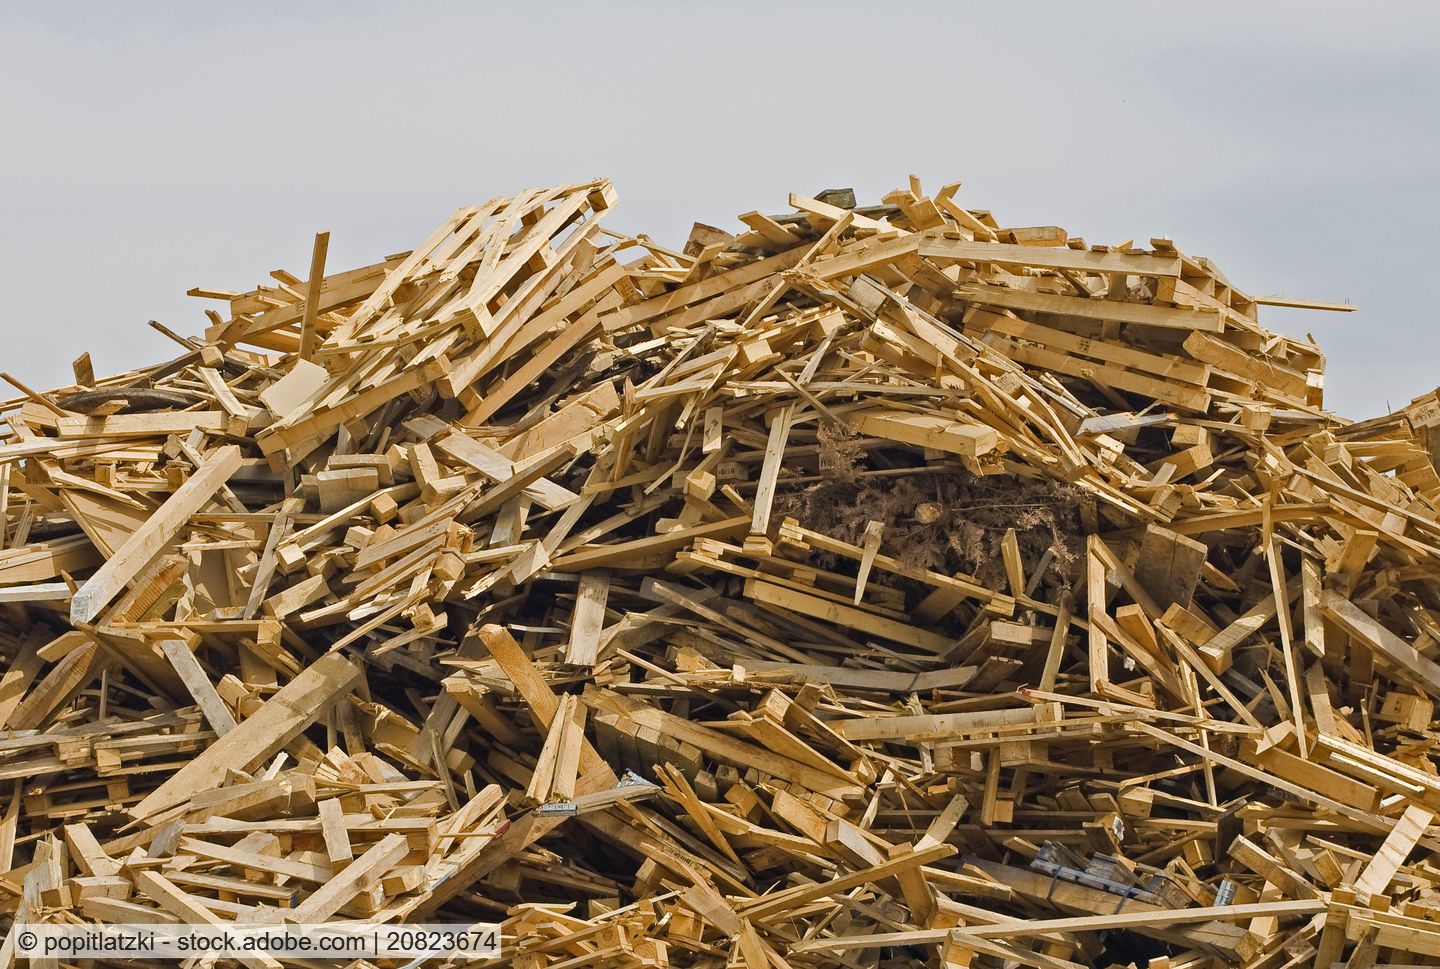 Stoffliche Verwertung von Altholz in den vergangenen Jahren erheblich gestiegen